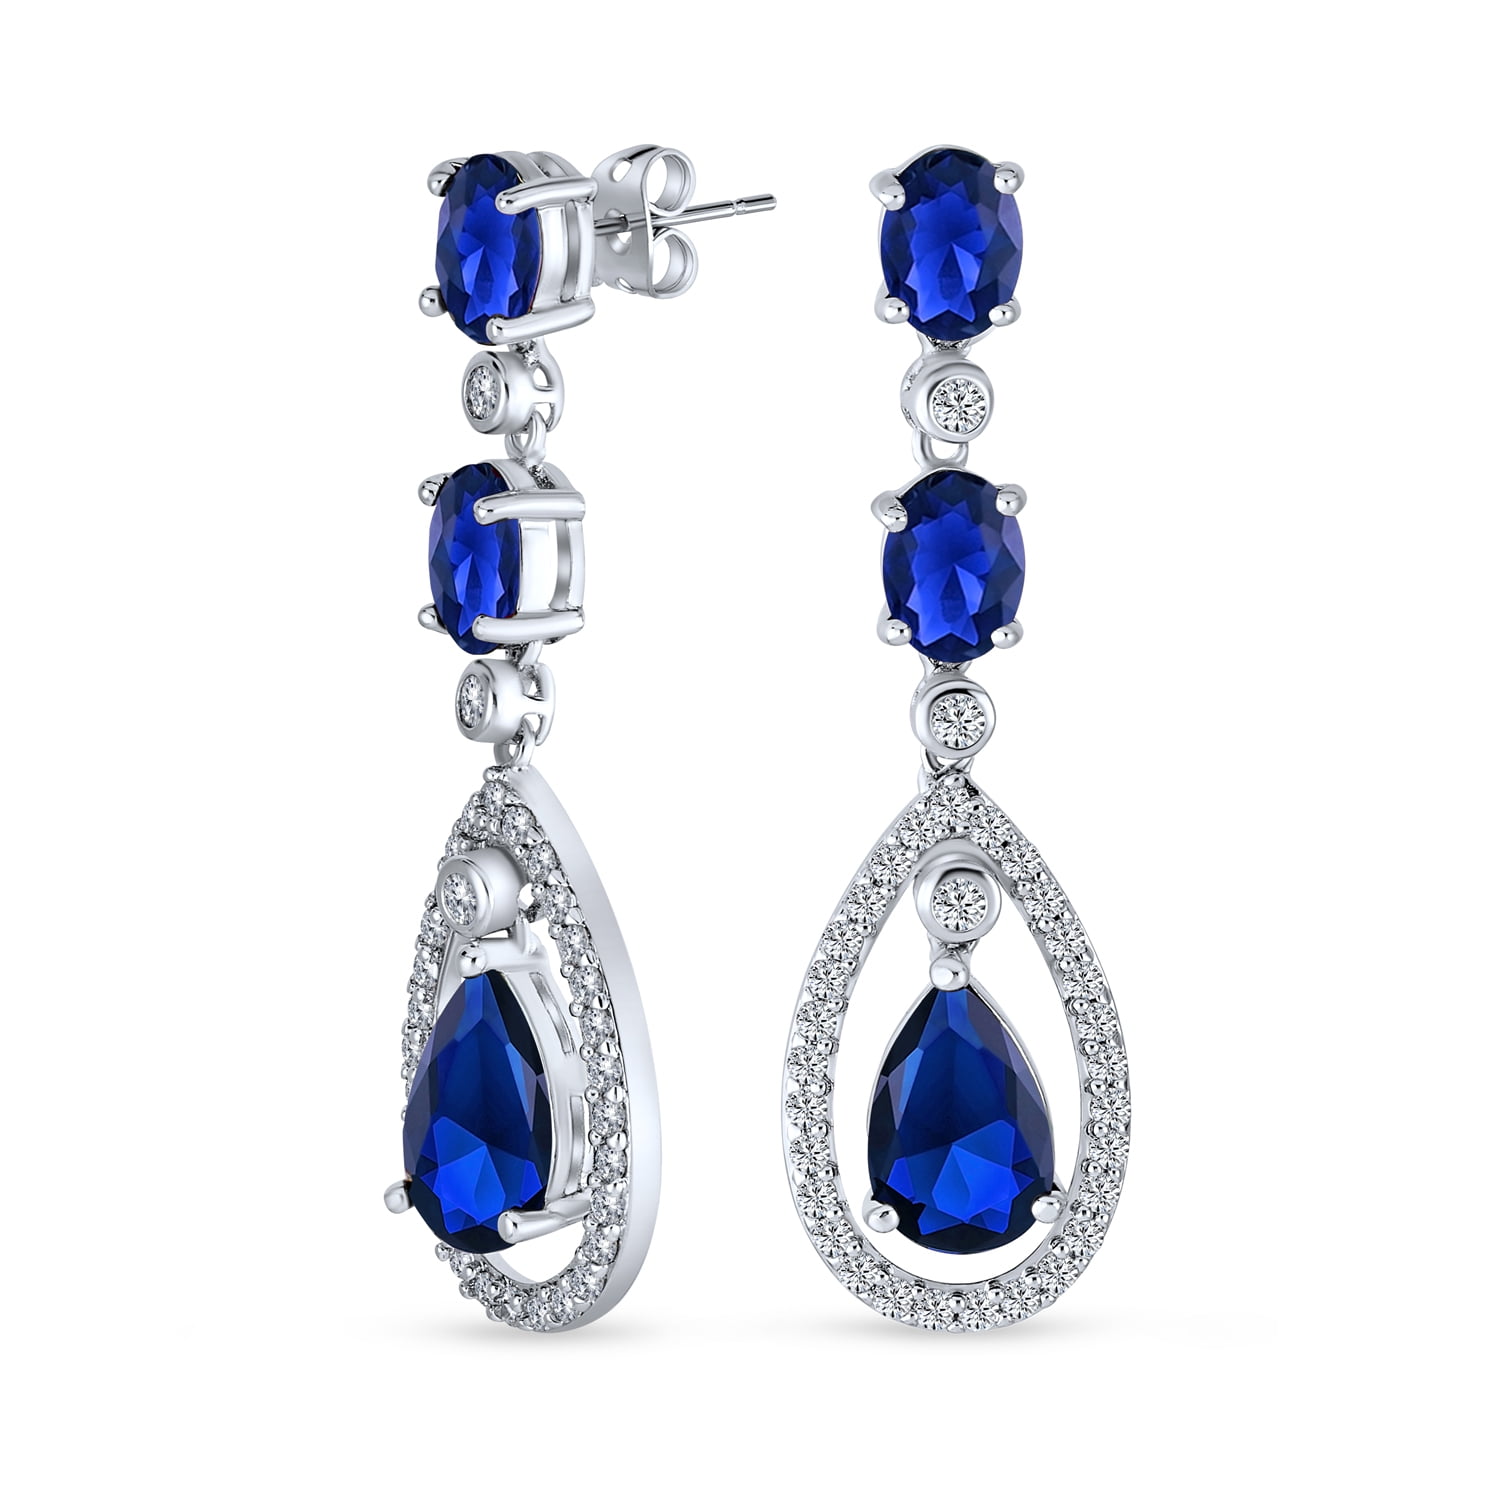 Blue Enamel Convertible Earrings Gold Tear Drop Earrings Pierced Baby Blue Enamel Earrings